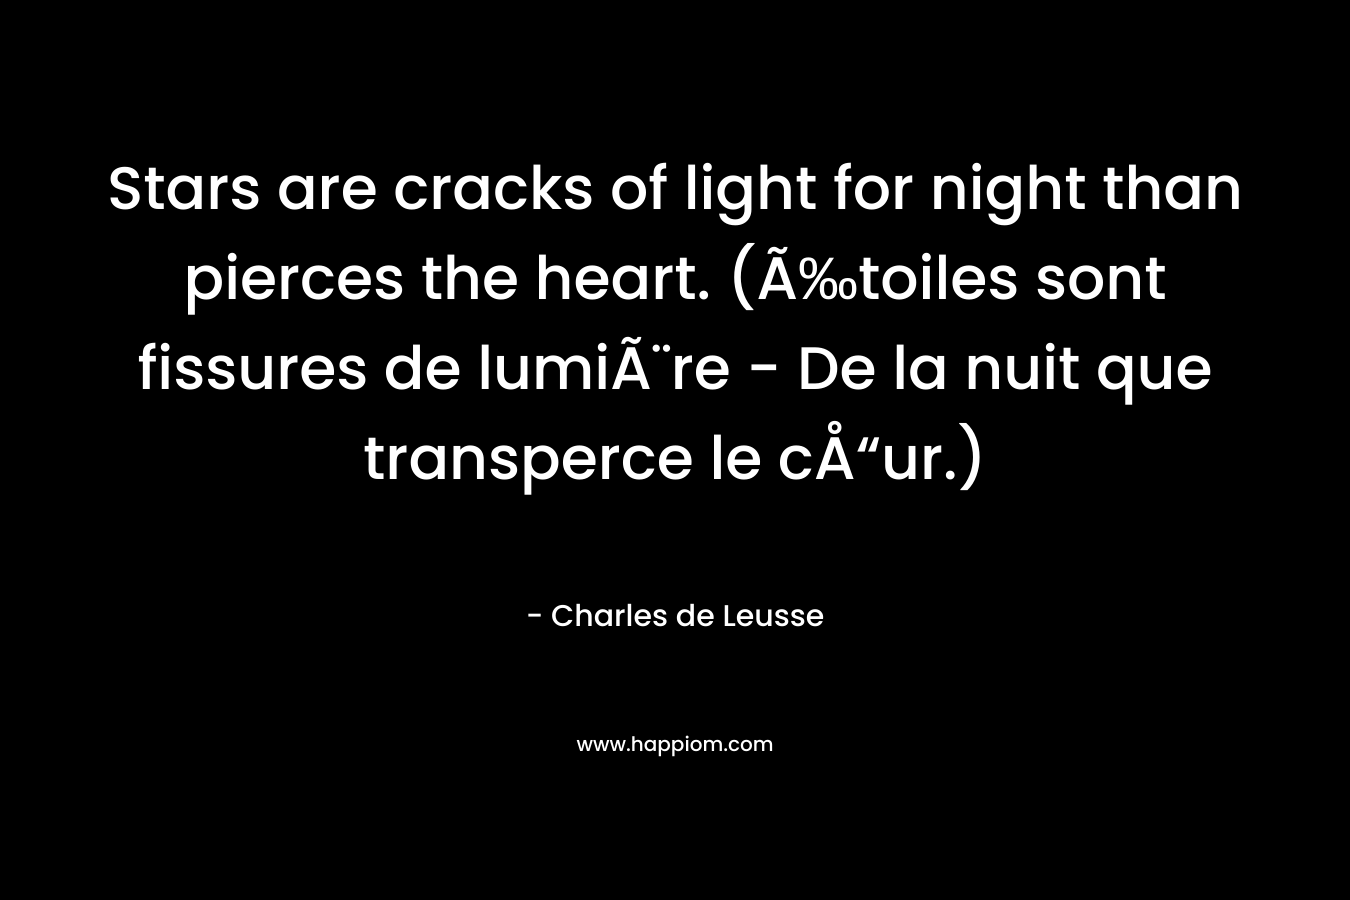 Stars are cracks of light for night than pierces the heart. (Ã‰toiles sont fissures de lumiÃ¨re – De la nuit que transperce le cÅ“ur.) – Charles de Leusse